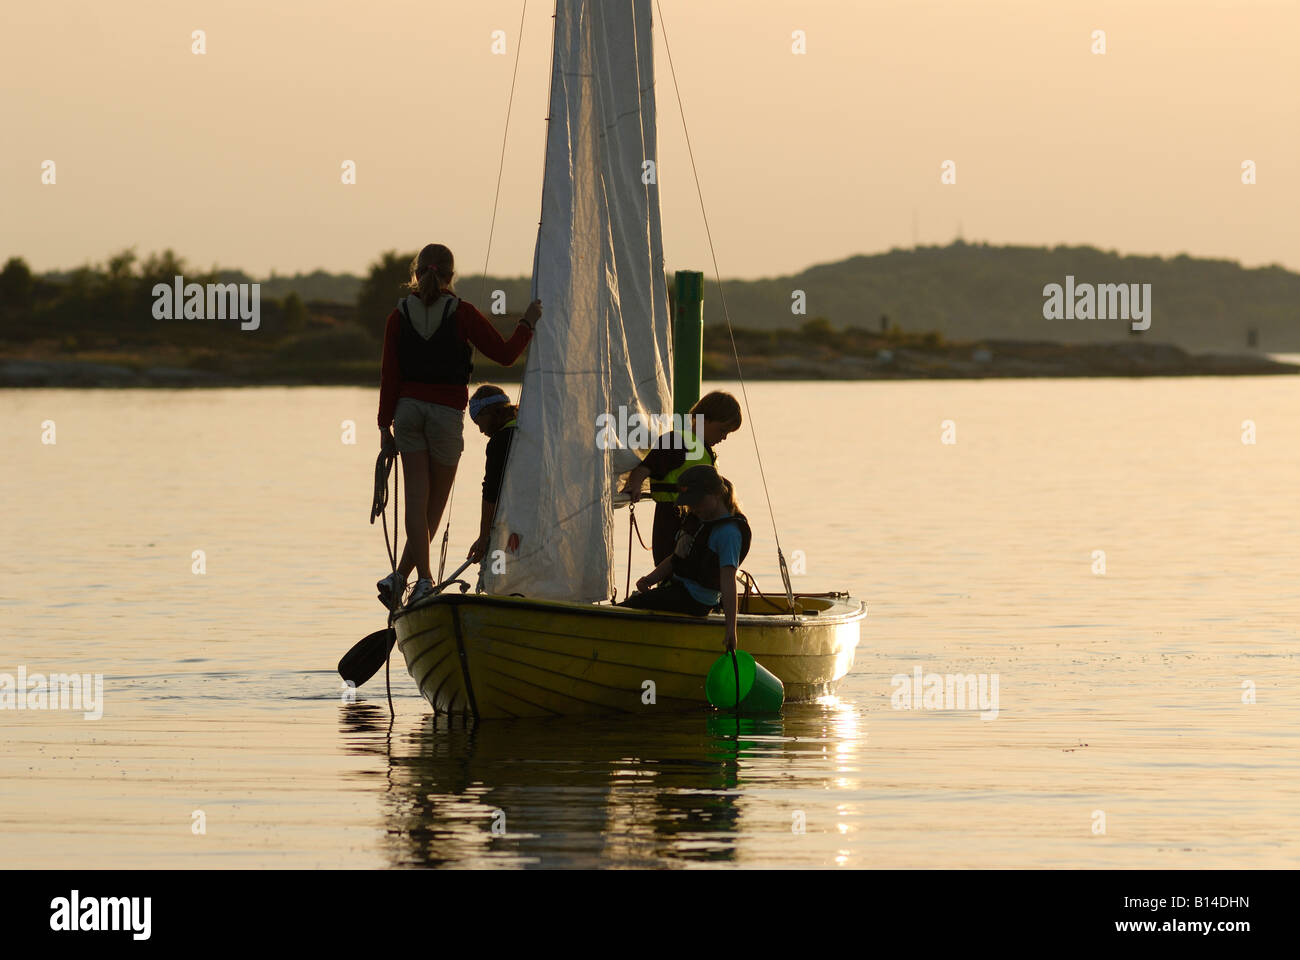 Sailing boat at dusk, Sweden, west coast Stock Photo